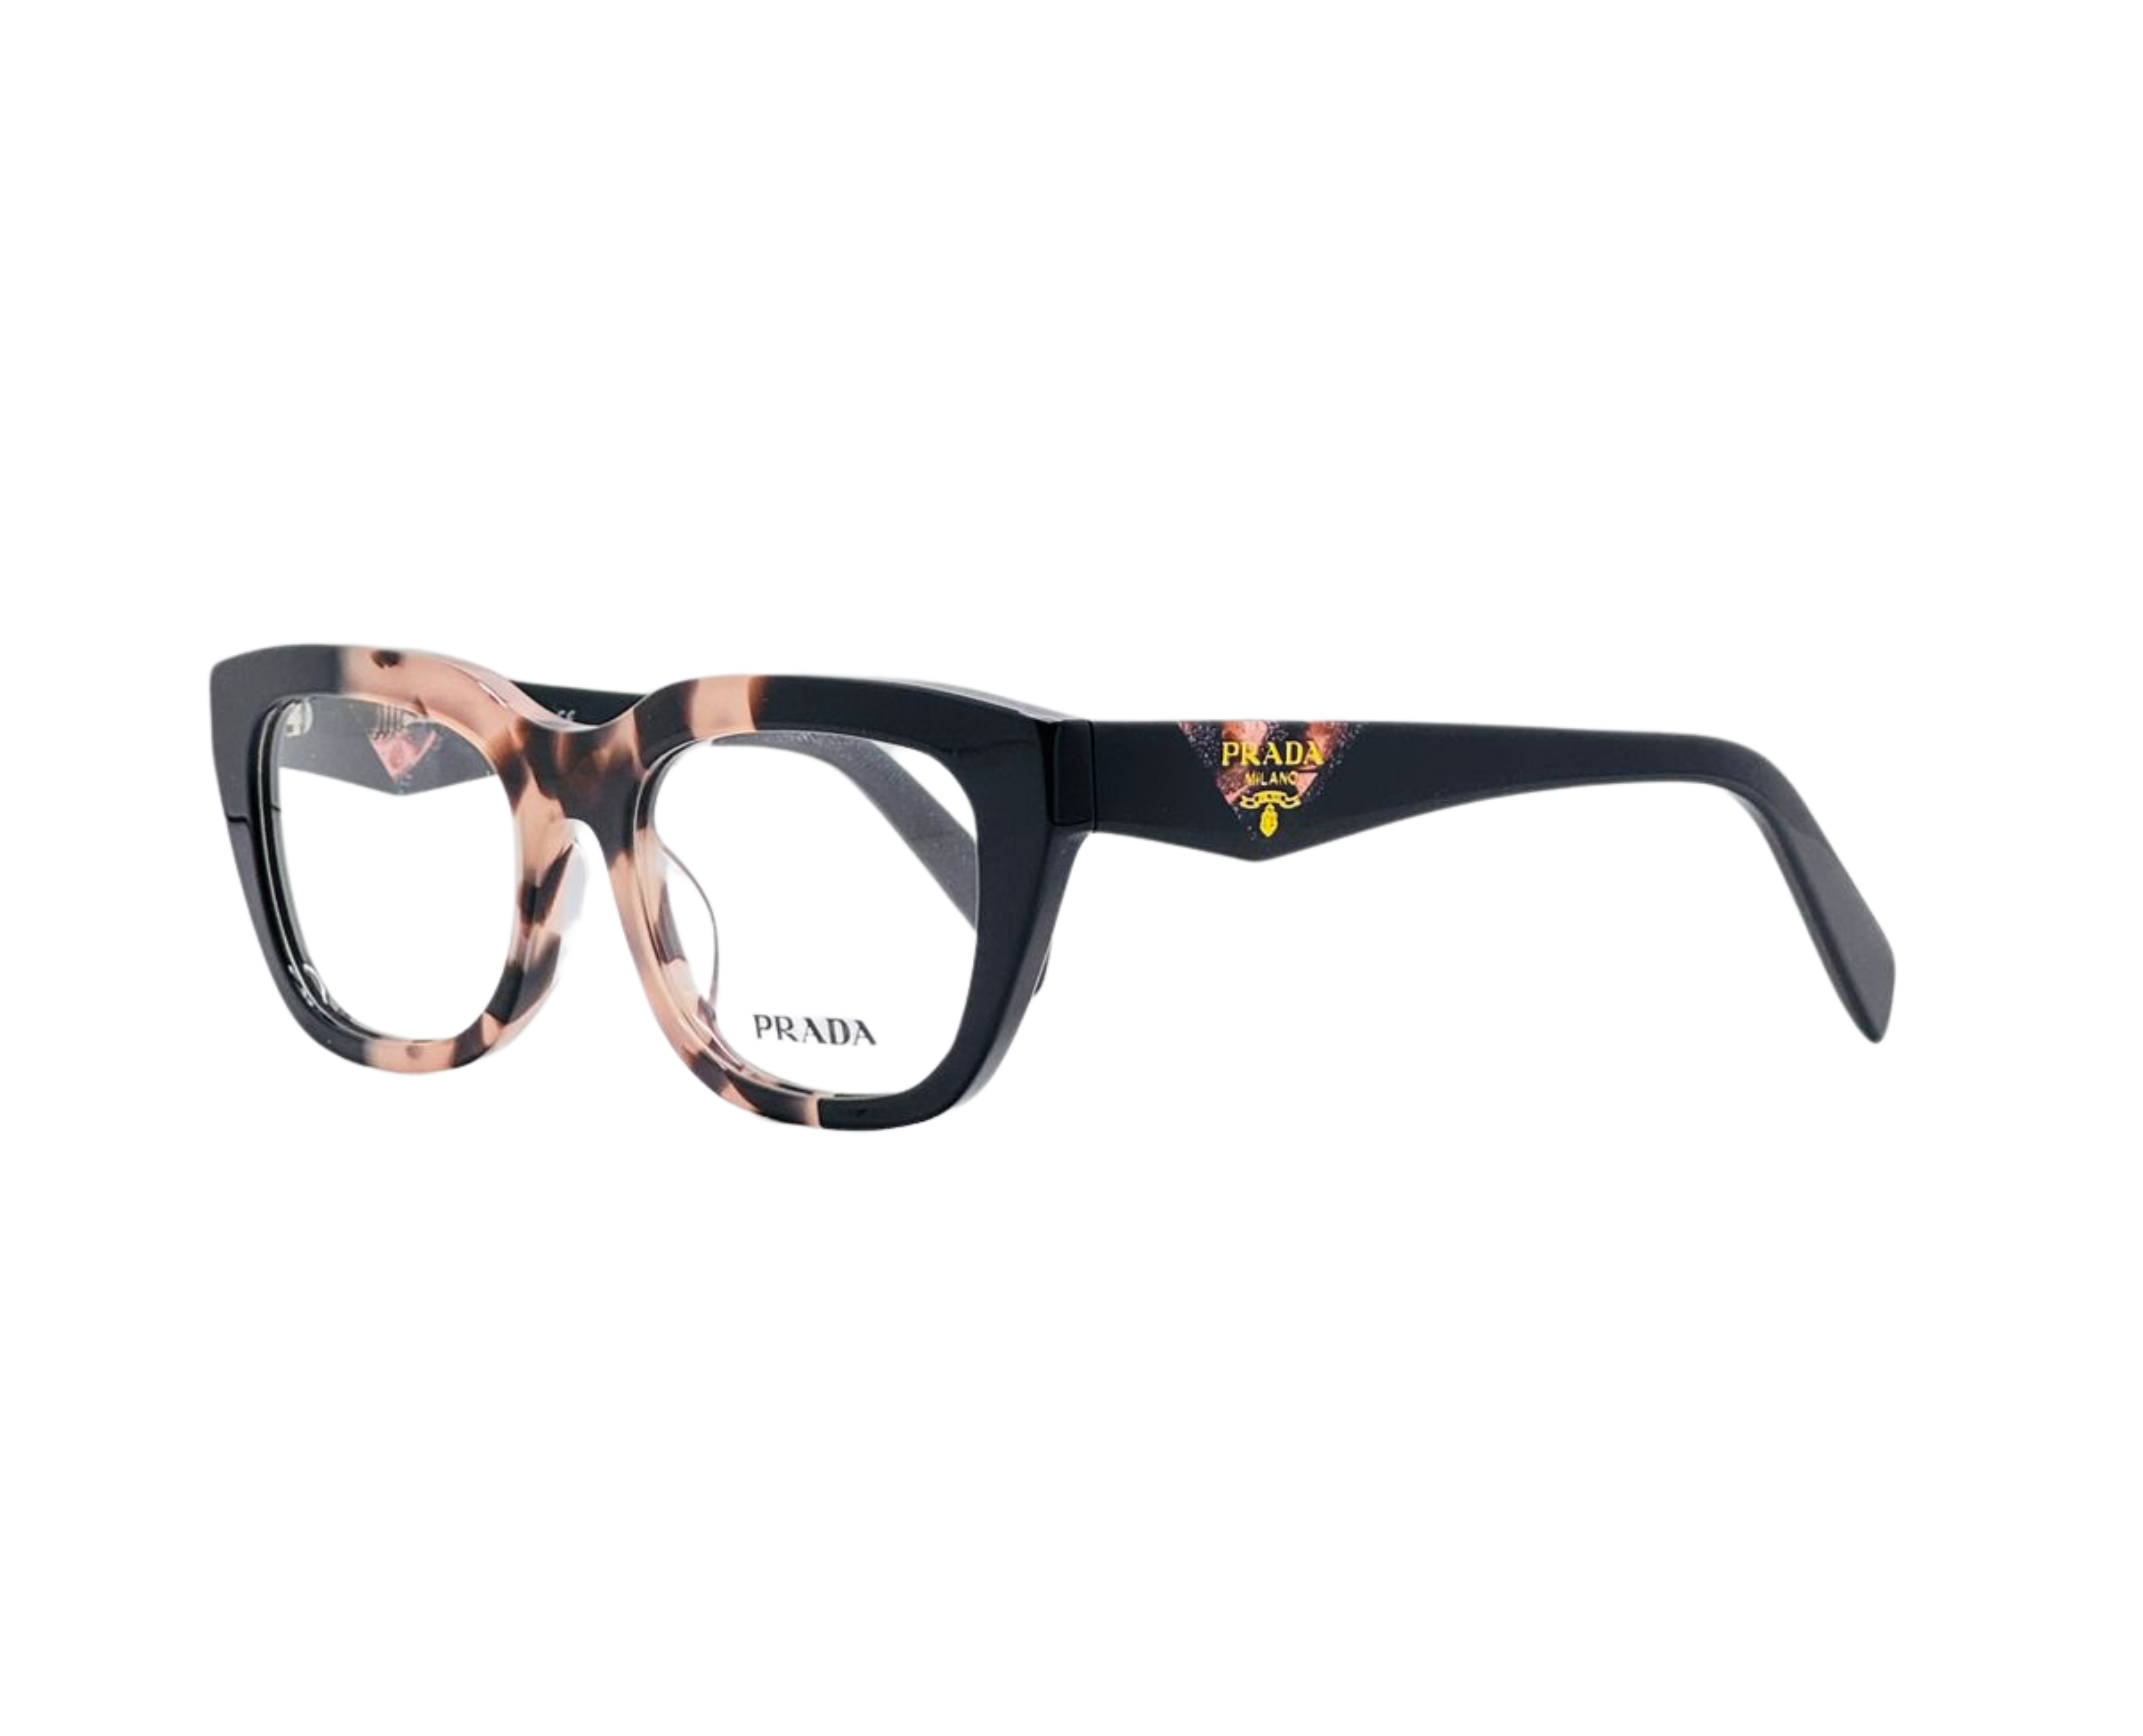 NS Luxury - J12 - Black Tortoise - Eyeglasses